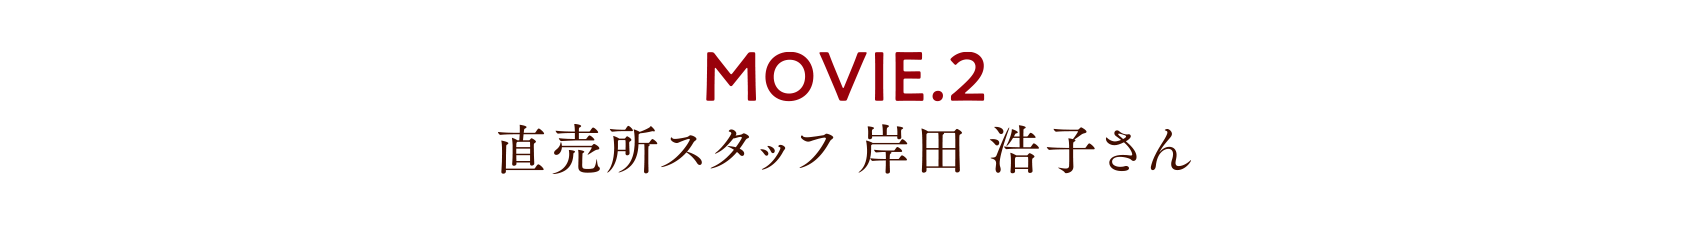 MOVIE.2 直売所スタッフ 岸田浩子さん